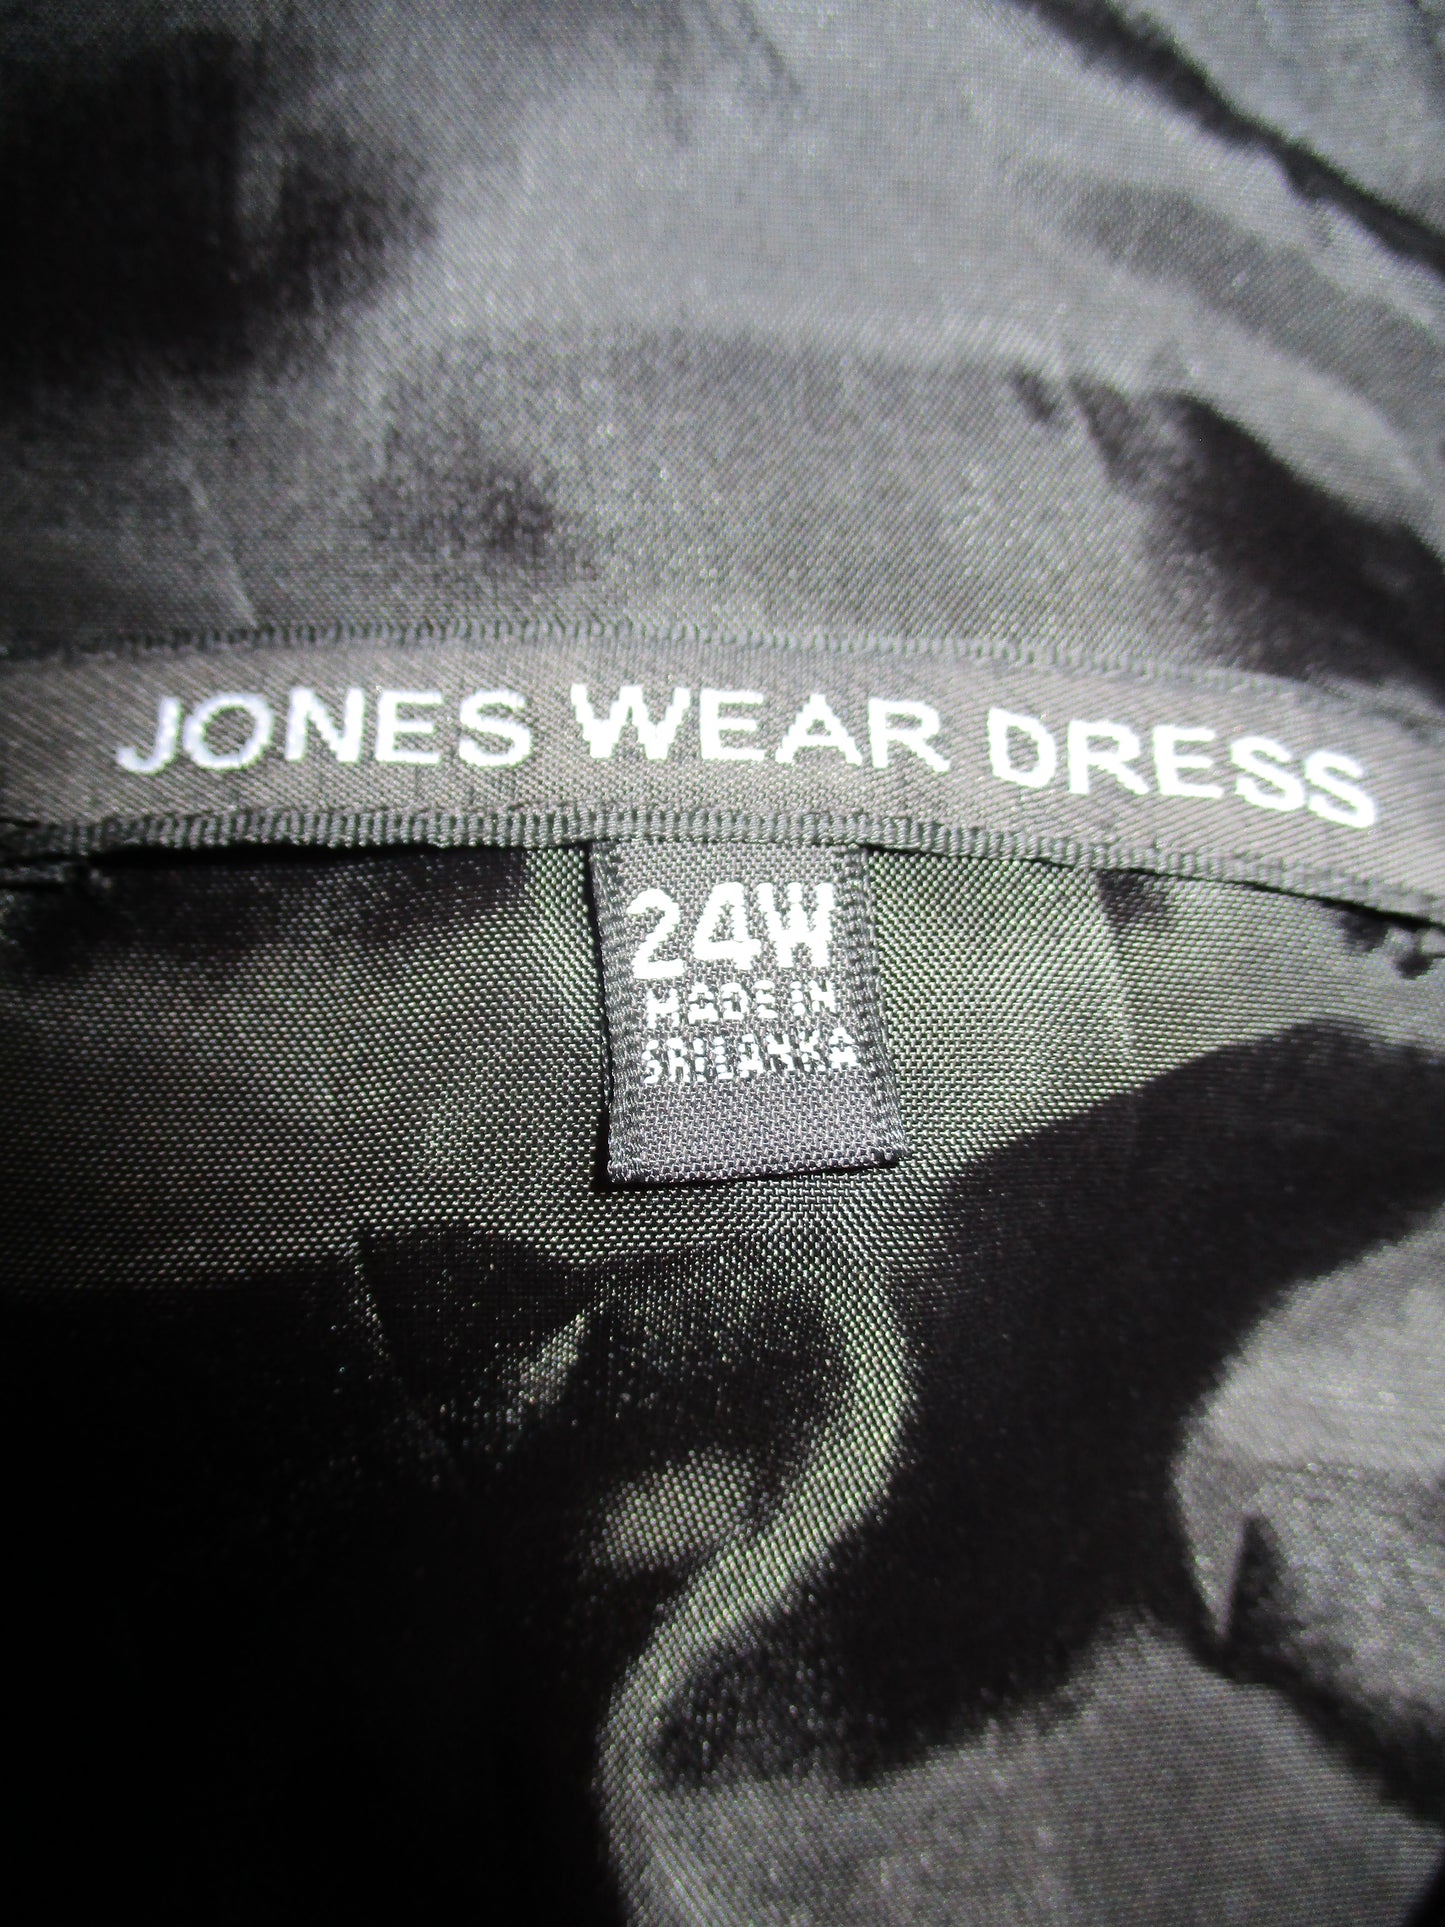 Jones Wear  Dress Polka Dot Size 24W SKU 000244-12